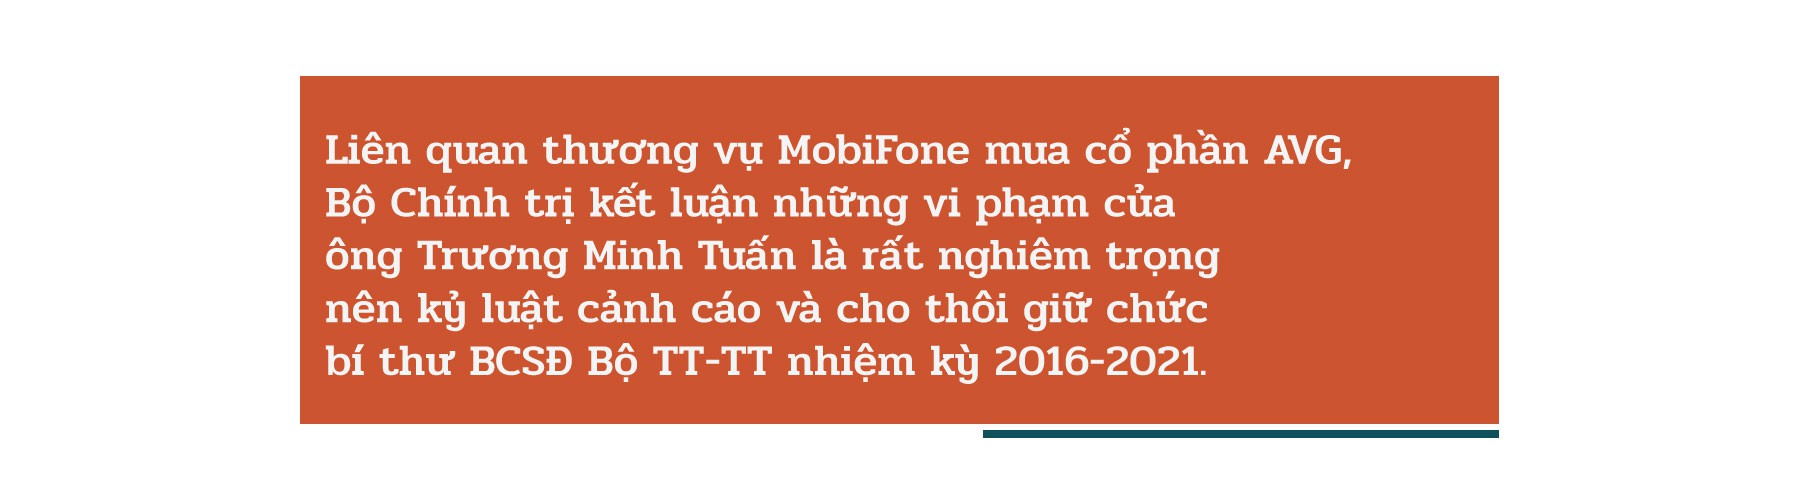 Ông Trương Minh Tuấn và thương vụ Mobifone mua cổ phần AVG - 2